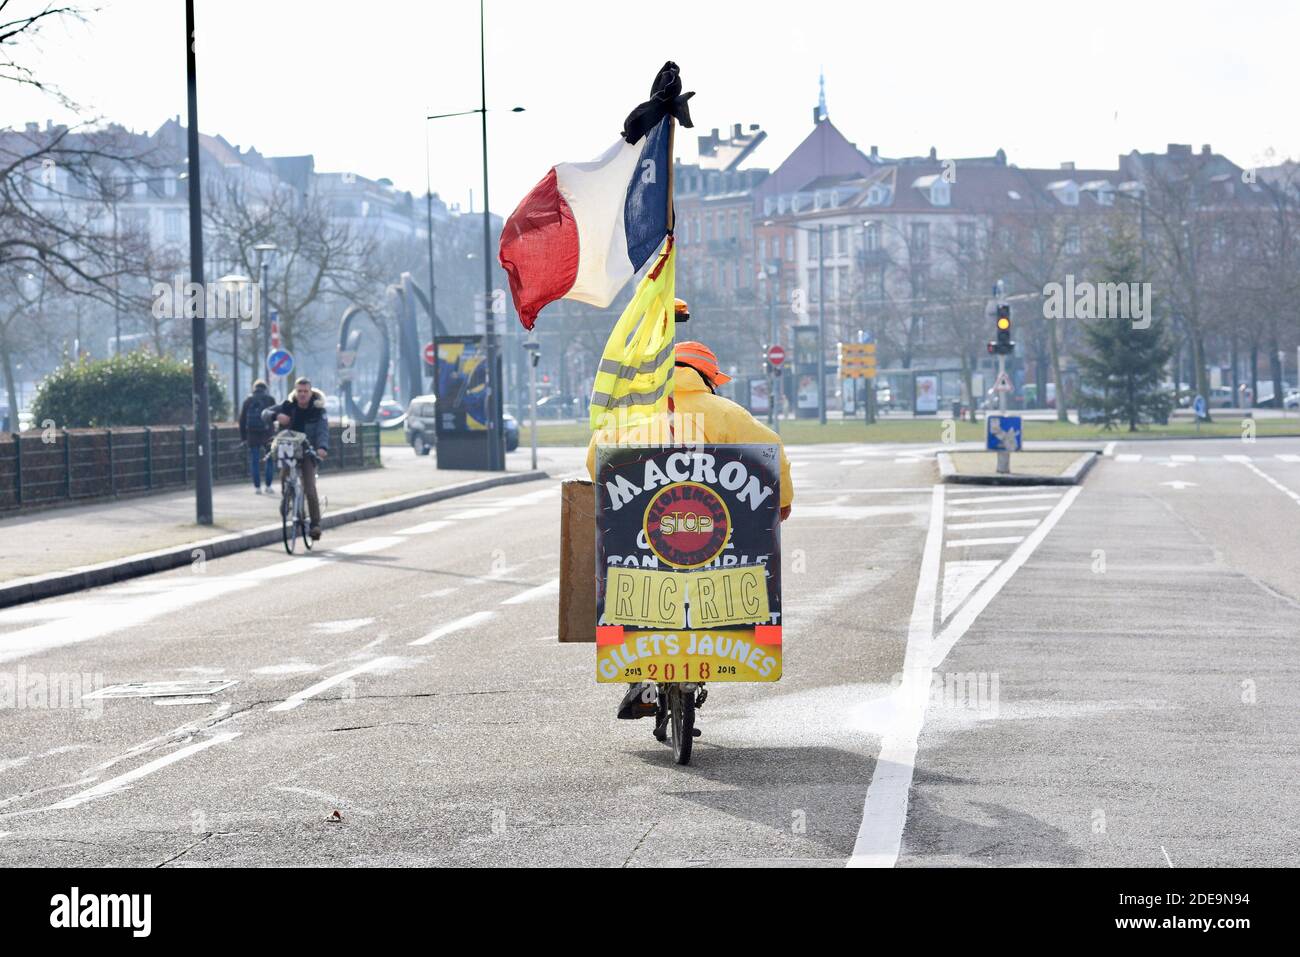 Les manifestants de Yellow Vest (Gilets Jaunes) se rassemblent à Strasbourg, en France, le 2 février 2019, alors qu'ils prennent les rues pour le 12e samedi consécutif. Le mouvement « Yellow Vest » (Gilets Jaunes) en France a commencé à protester contre les hausses de carburant prévues, mais s'est transformé en une protestation de masse contre la politique du président et le style de gouvernement de haut en bas. Photo de Nicolas Roses/ABACAPRESS.COM Banque D'Images